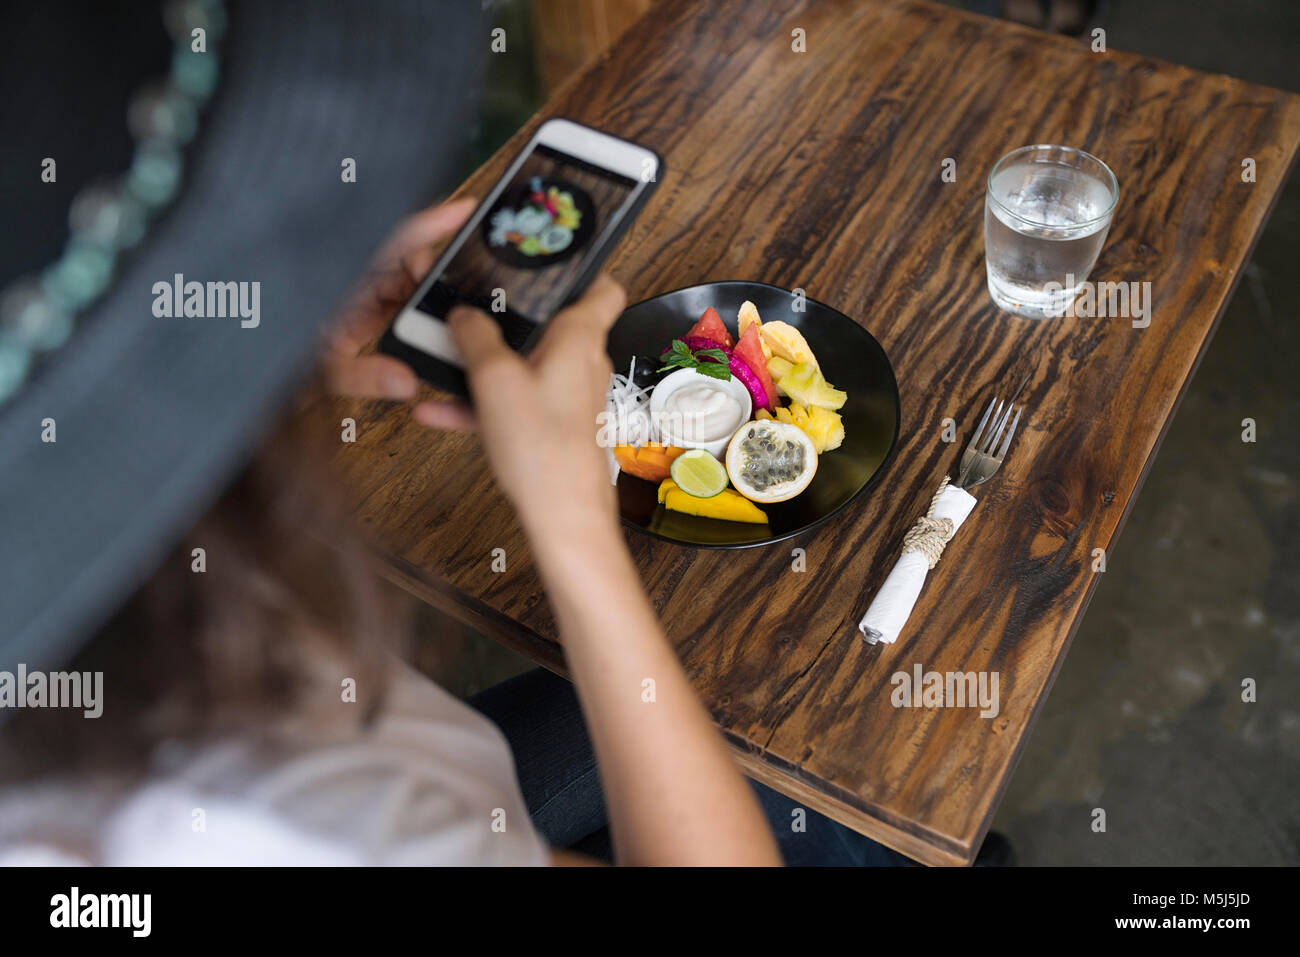 Mujer toma una foto de la comida en un plato con el smartphone Foto de stock